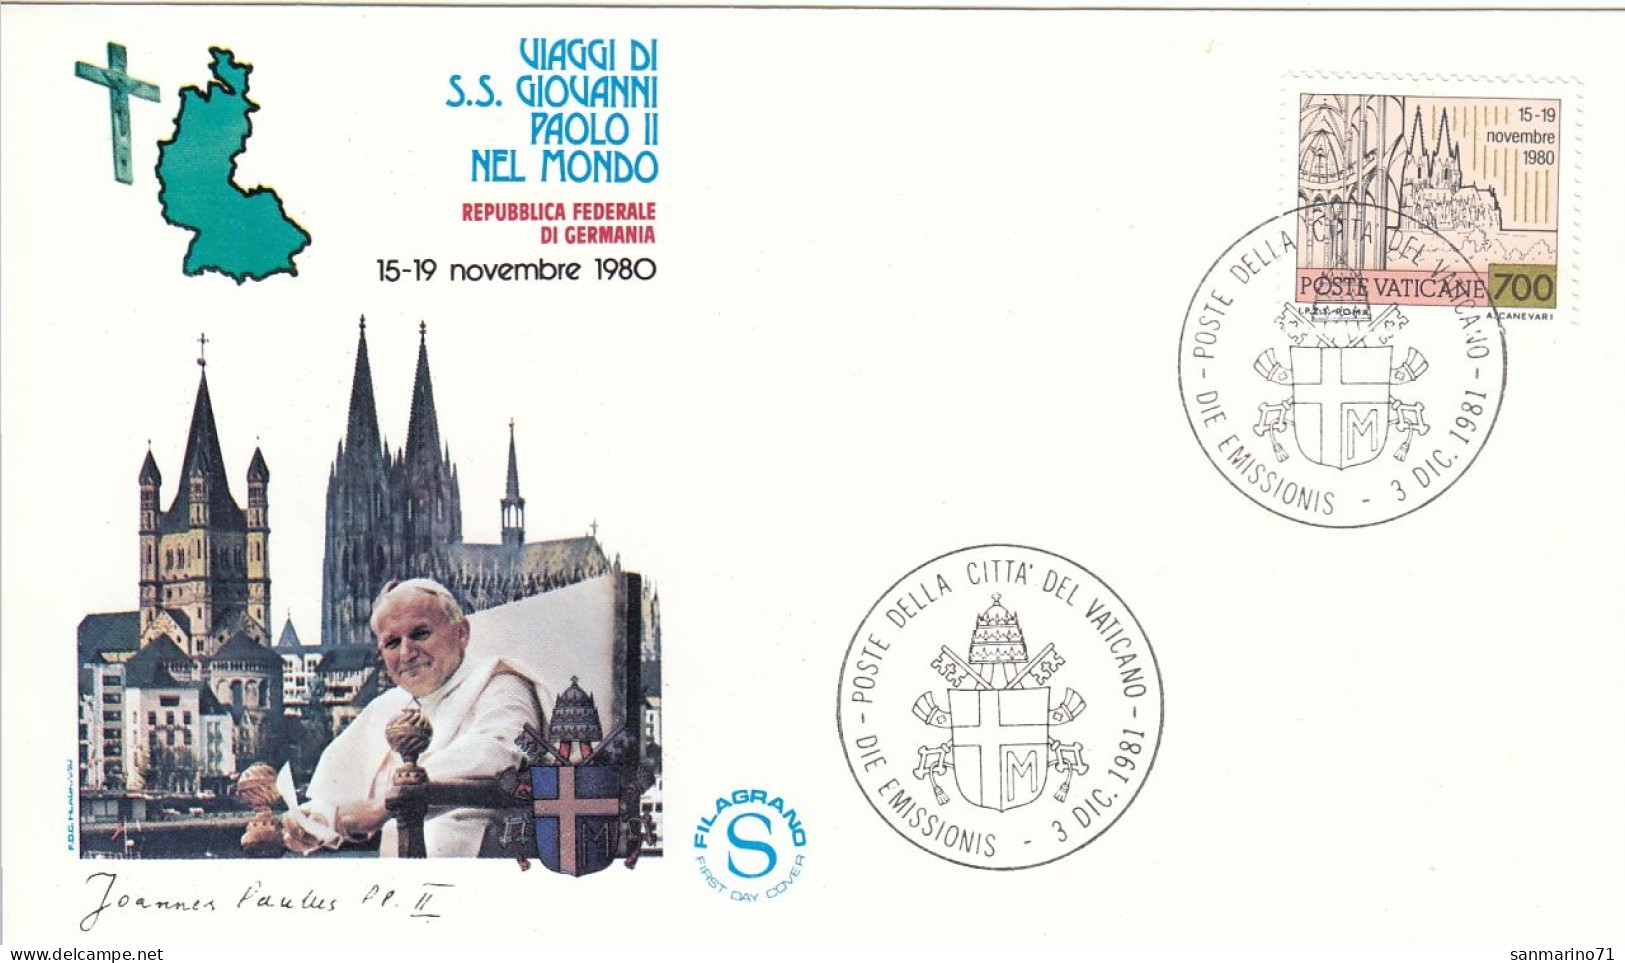 VATICAN Cover 2-93,popes Travel 1981 - Briefe U. Dokumente